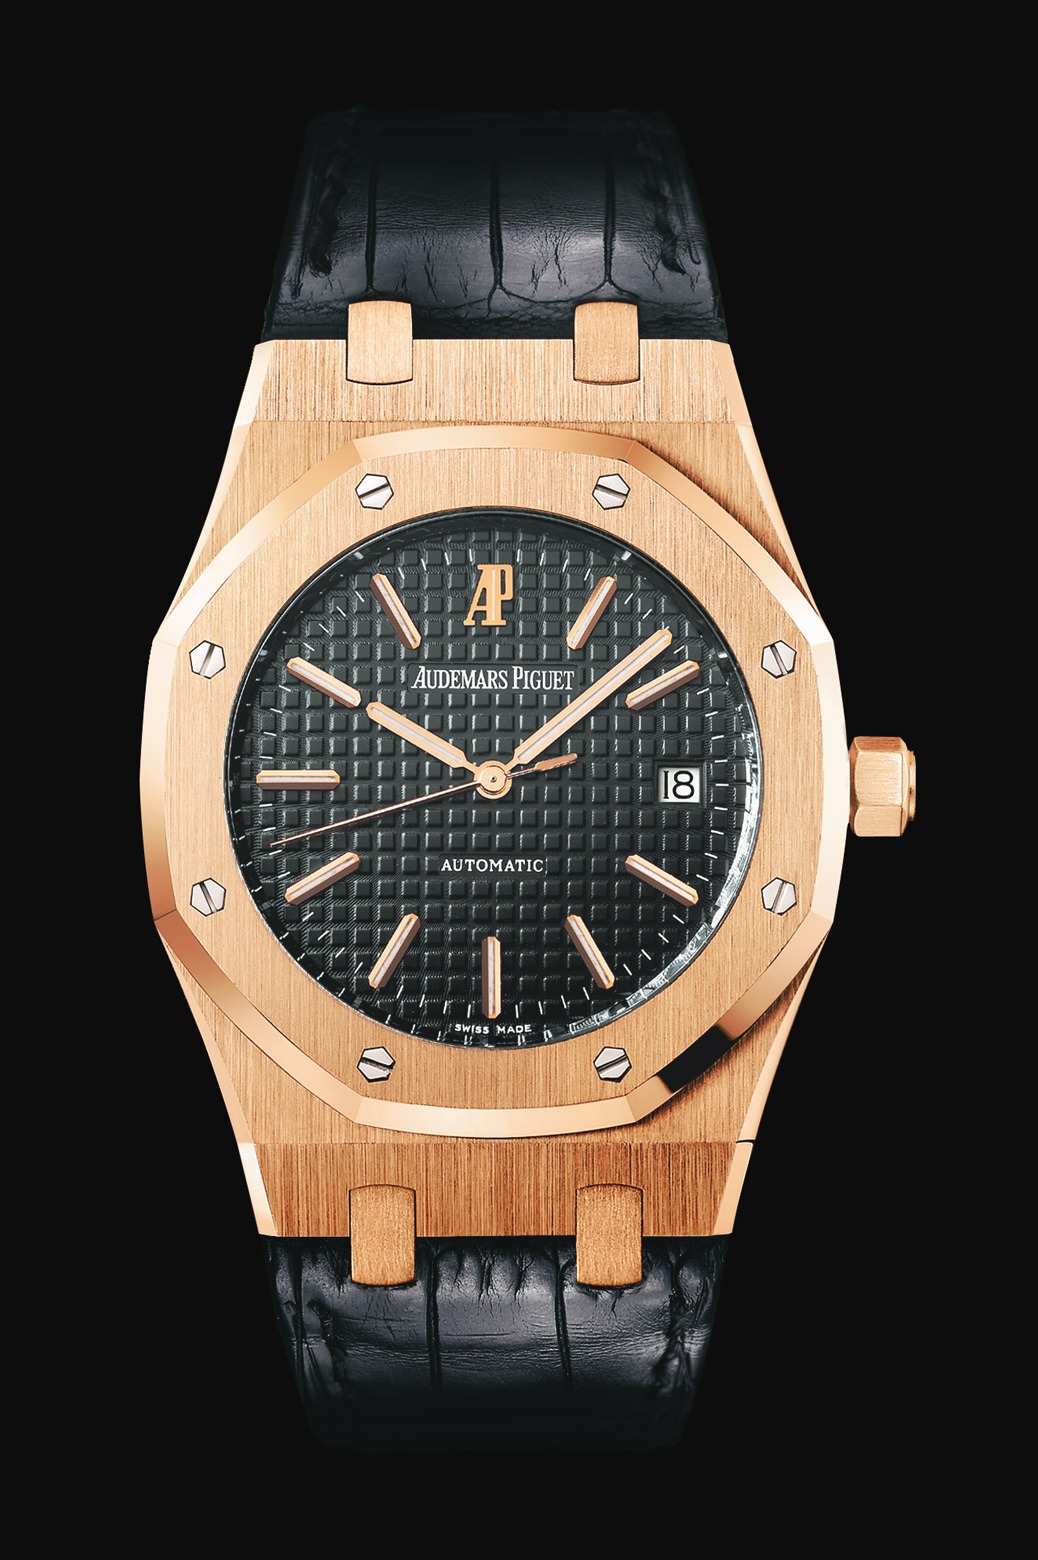 Audemars Piguet Royal Oak Automatic Pink Gold watch REF: 15300OR.OO.D002CR.01